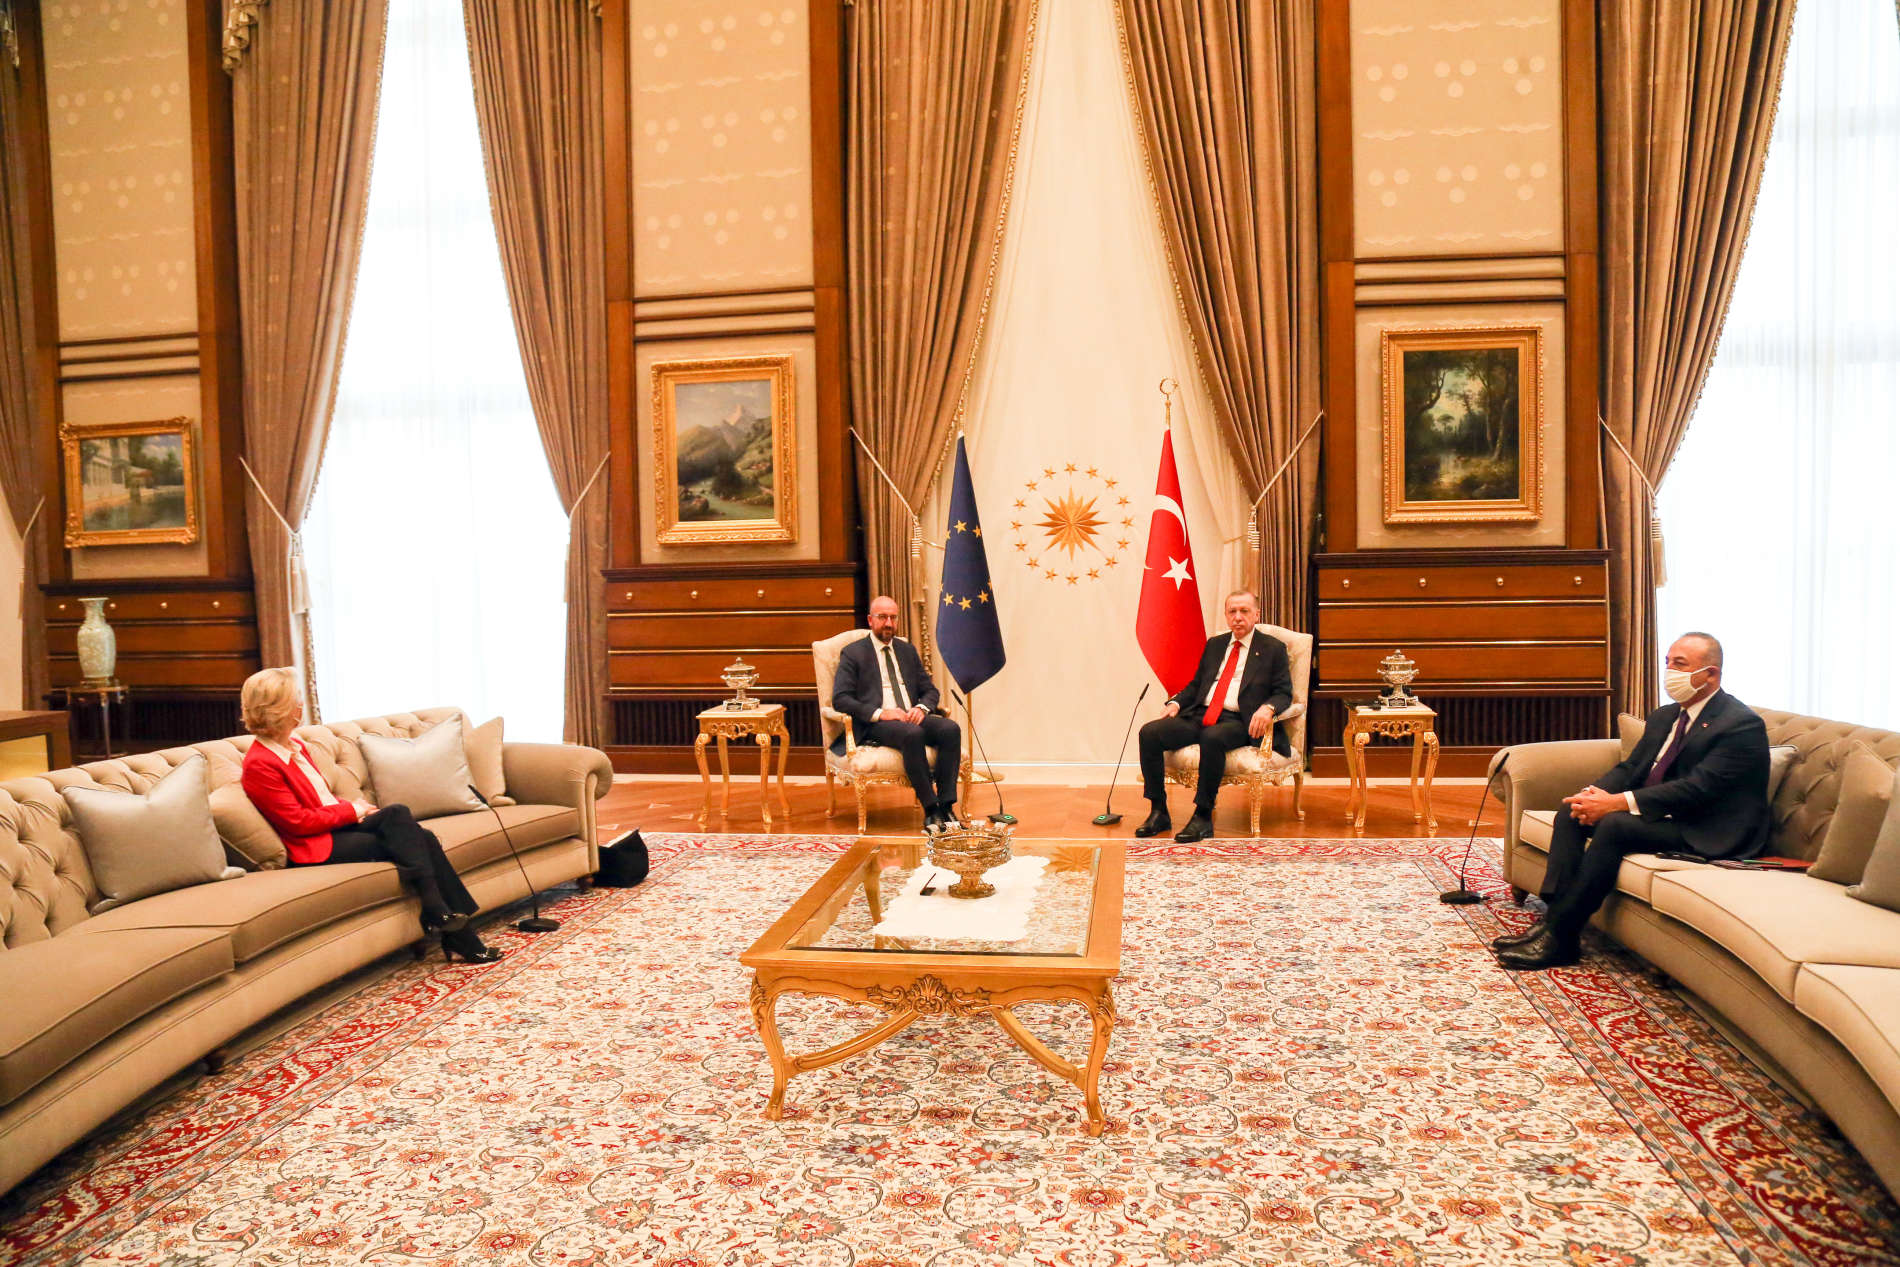 Dieses Bild war der Stein des Anstoßes. EU- Kommissionschefin von der Leyen saß bei einem Besuch beim türkischen Staatschef Erdogan auf einem Sofa, EU-Ratspräsidenten Charles Michel ( 2. v. l.). wurde ein Stuhl angeboten. Von der Leyen gegenüber saß der türkische Außenminister Mevlüt Cavusoglu.